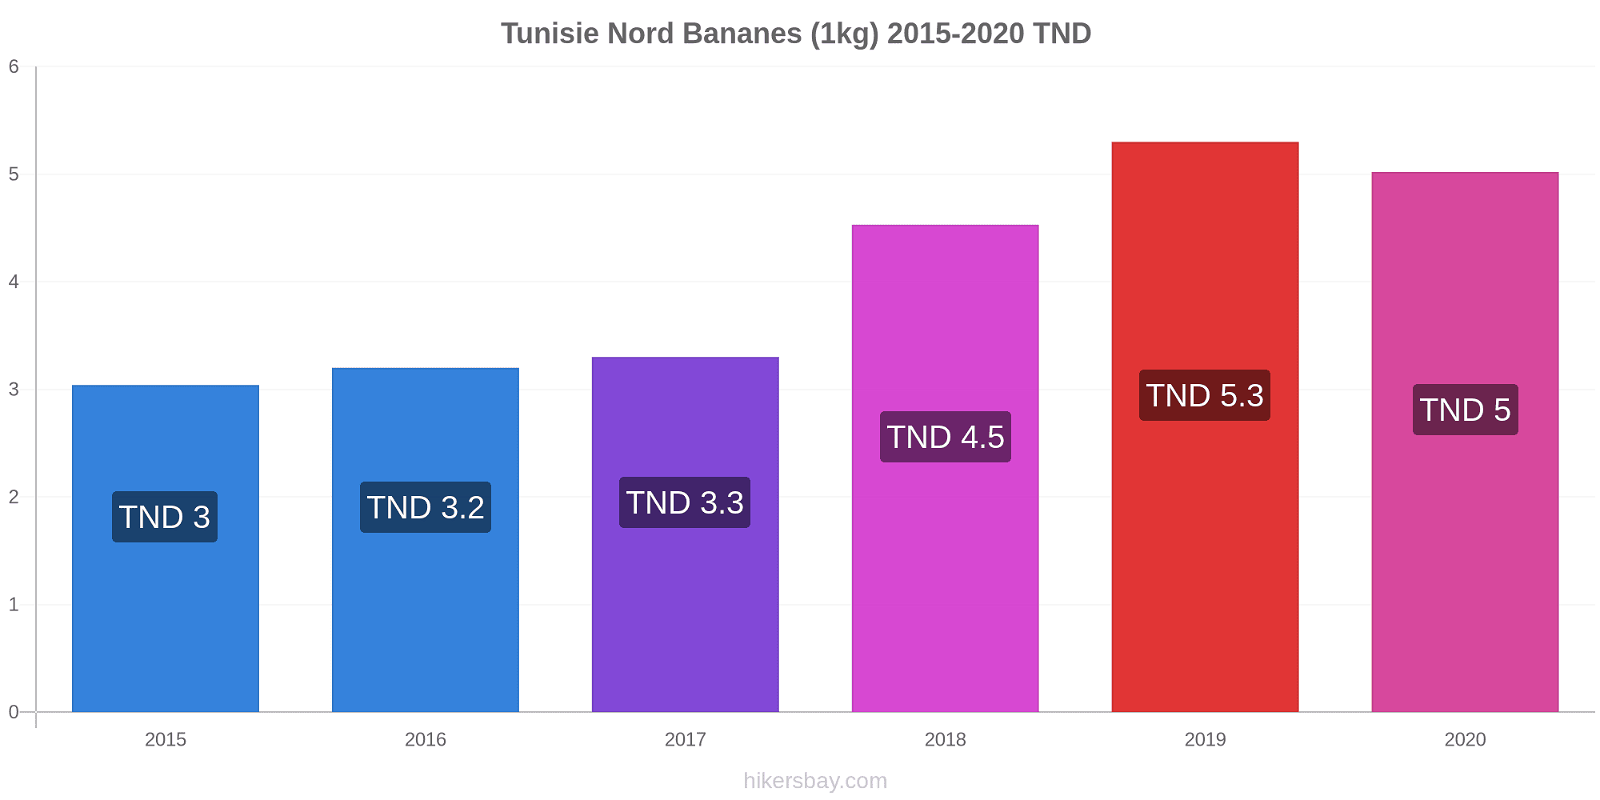 Tunisie Nord changements de prix Bananes (1kg) hikersbay.com